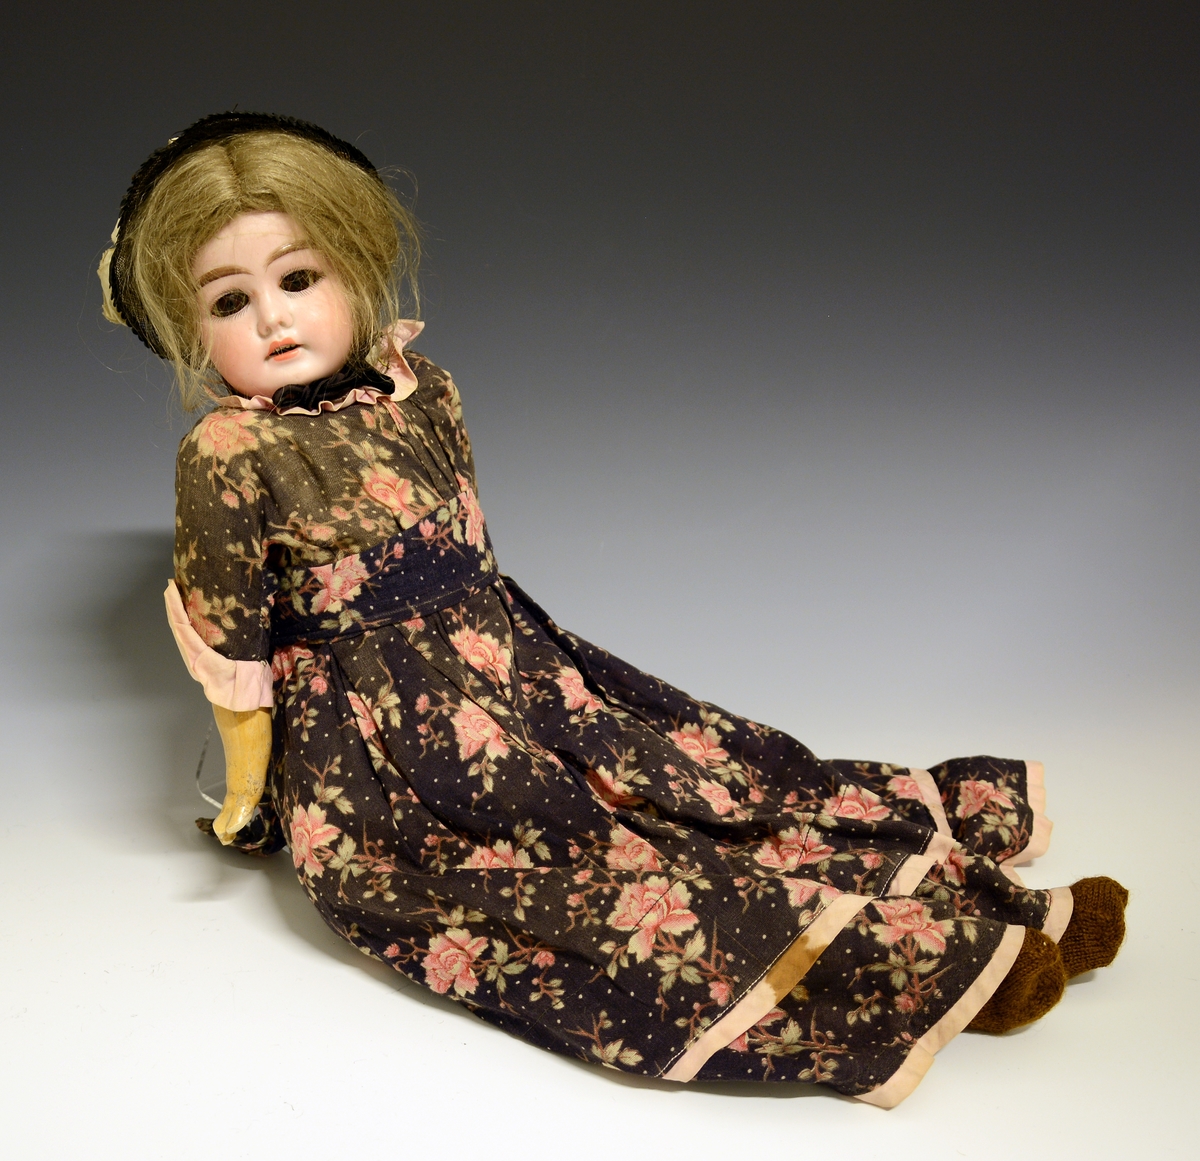 Dukke med kropp sydd av stoff, fylt med sagflis e.l. Armer og ben av gips. Hode av porselen (bisquit).